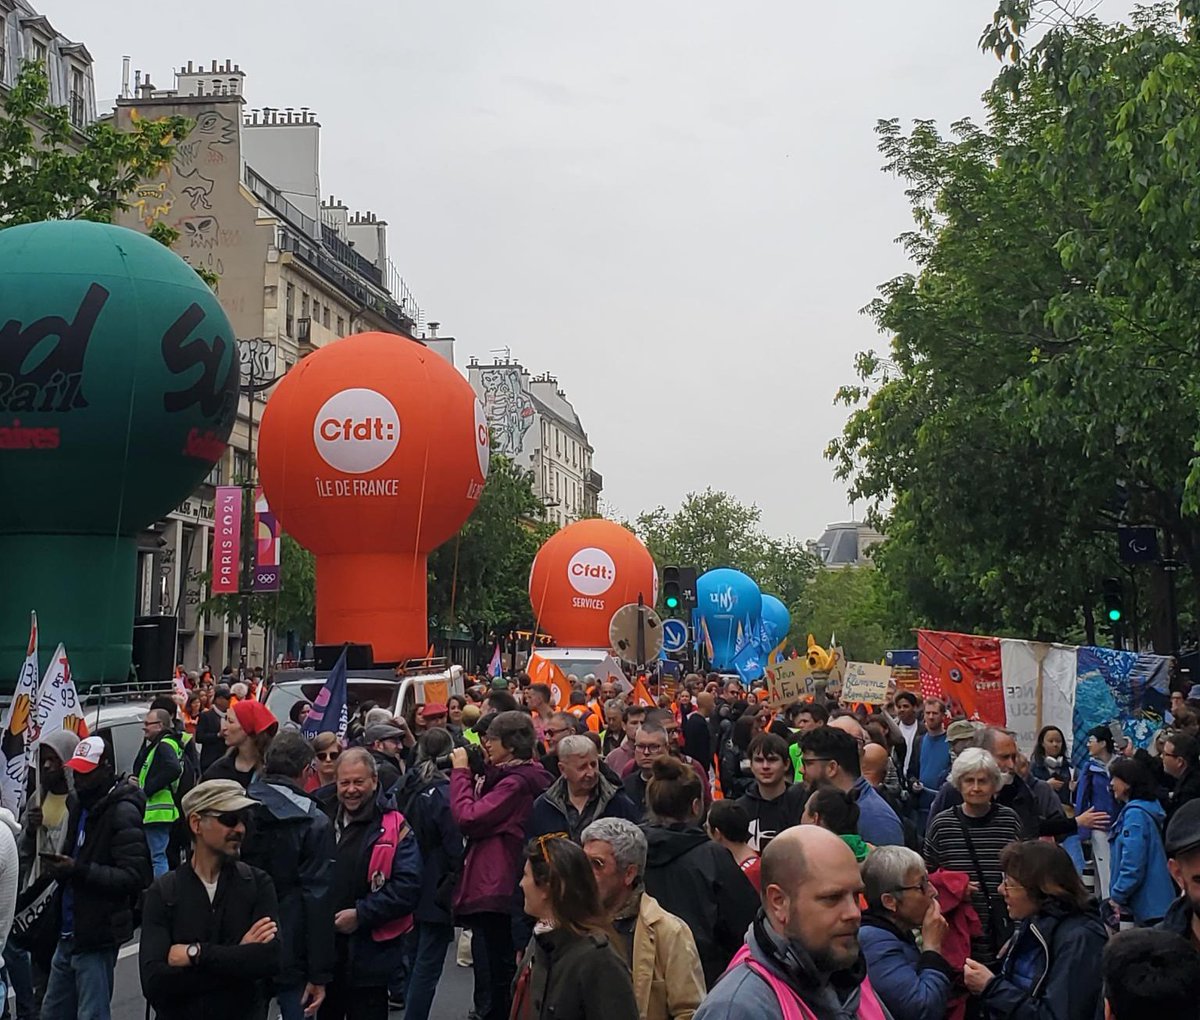 La REV, parti d'écologie radicale et antispéciste, se mobilise partout en France pour une société du temps libéré, respectueuse du vivant.

#1erMai2024 #1erMai #fetedutravail